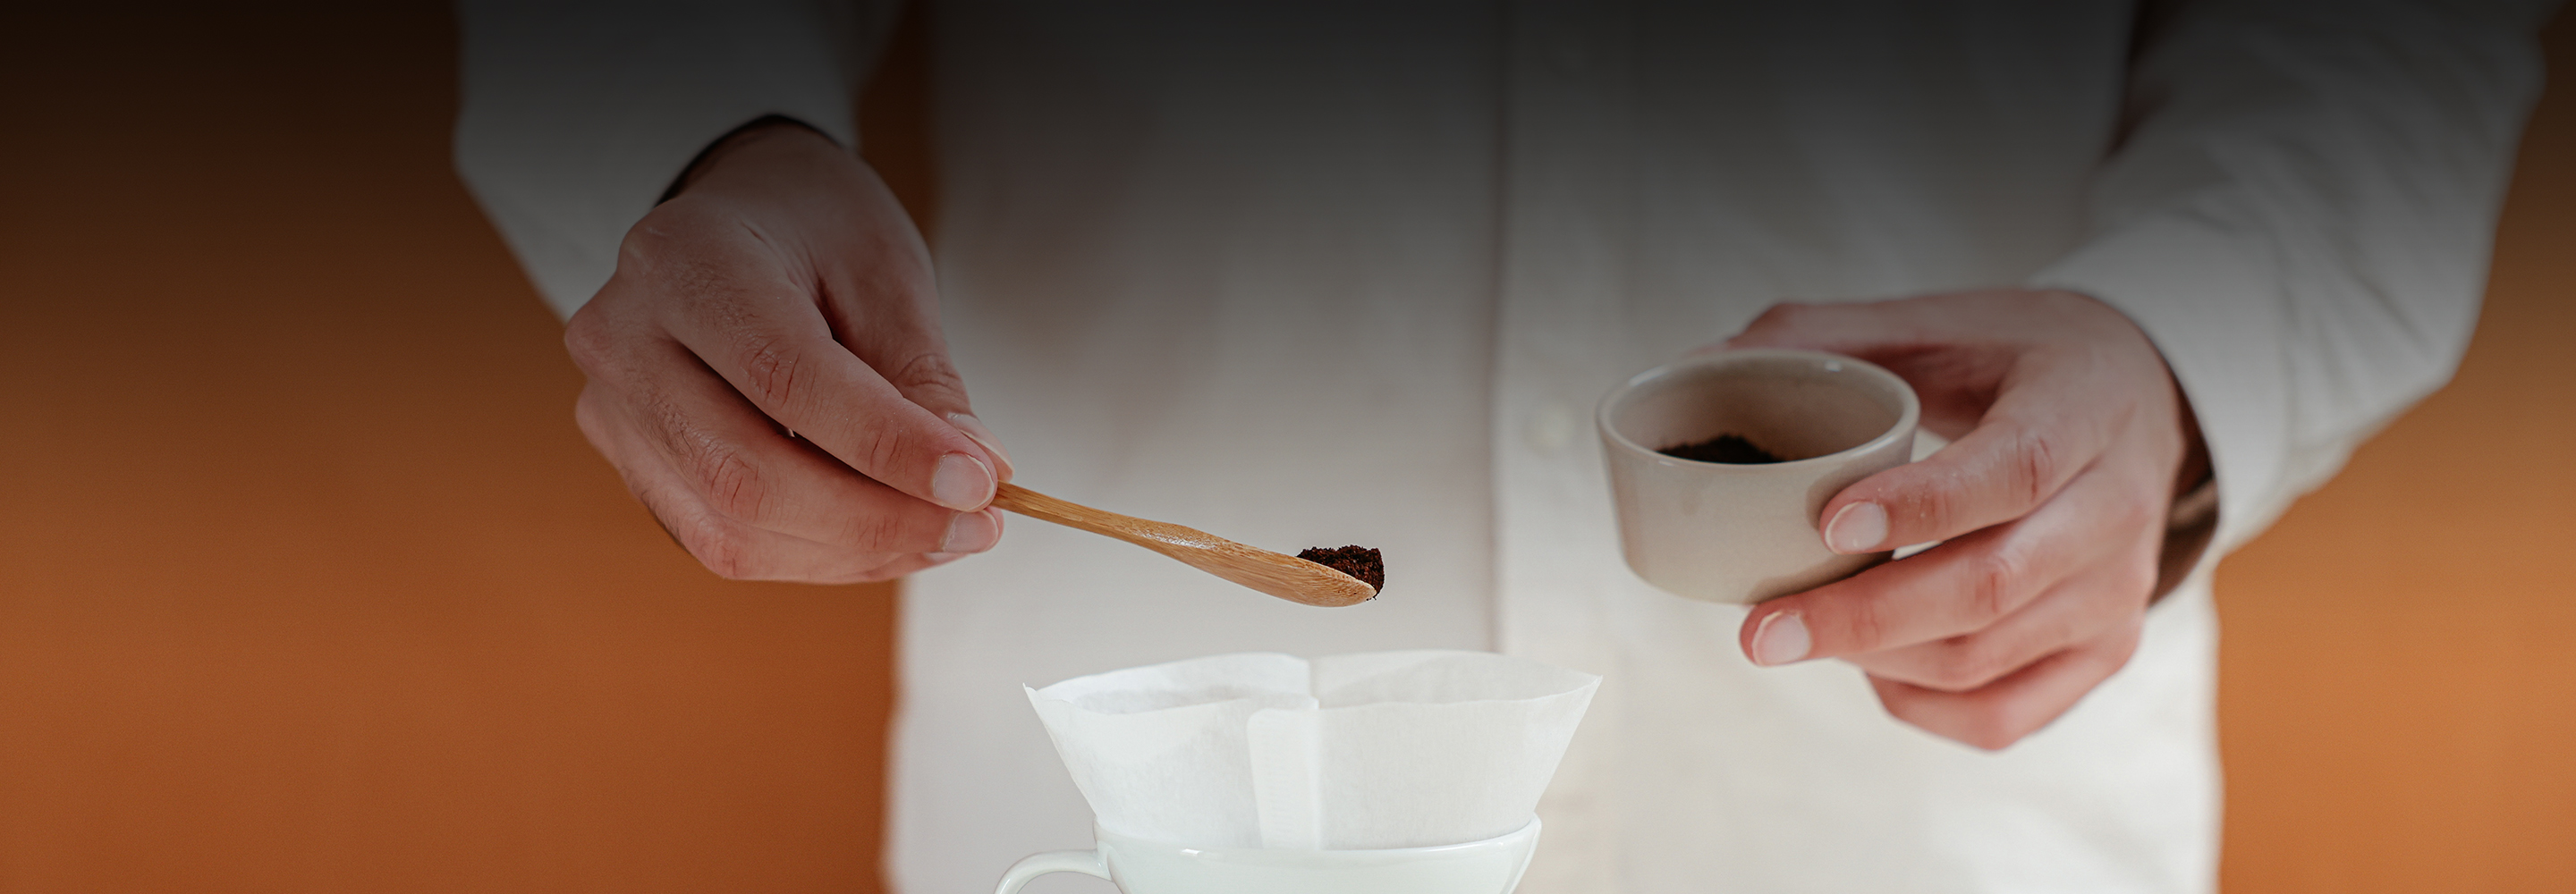 Пуровер, аэропресс и обычная чашка: 7 альтернативных приспособлений для приготовления кофе